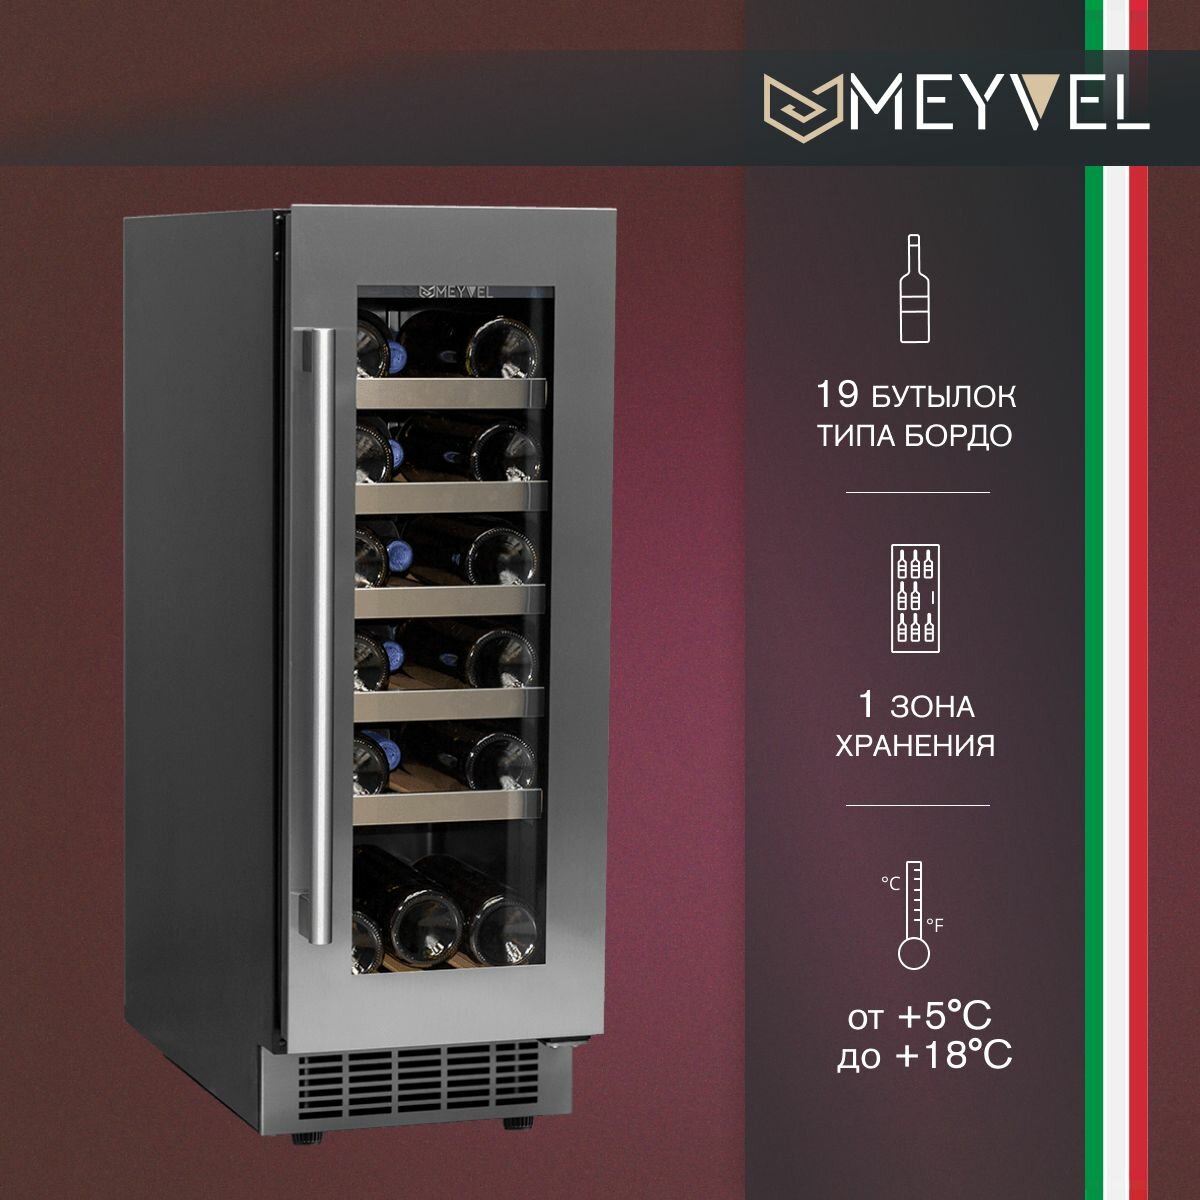 Винный холодильный шкаф Meyvel MV18-KST1 компрессорный (встраиваемый холодильник для вина на 19 бутылок)